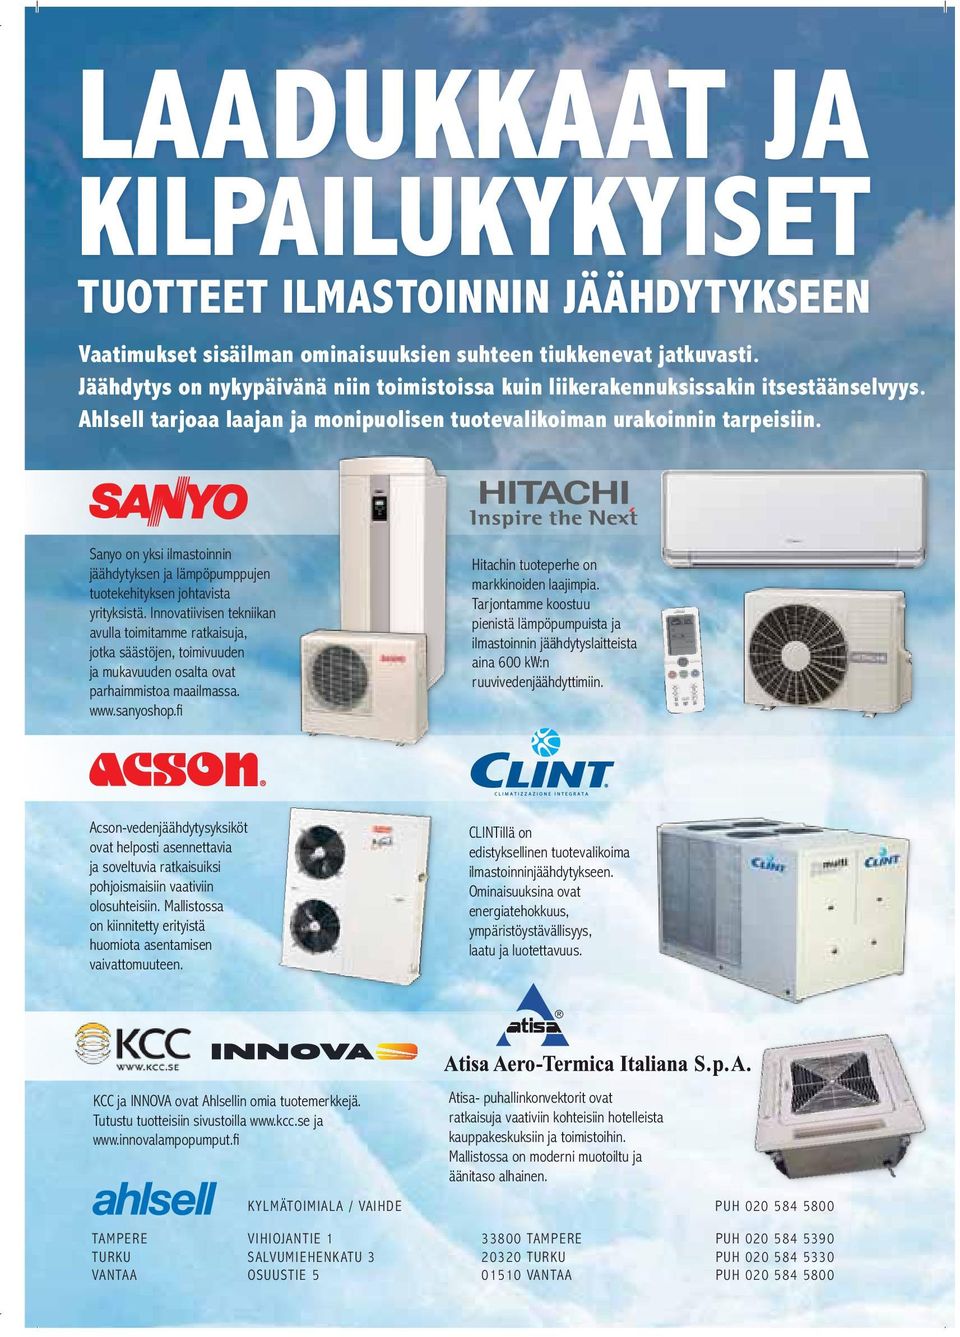 Sanyo on yksi ilmastoinnin jäähdytyksen ja lämpöpumppujen tuotekehityksen johtavista yrityksistä.